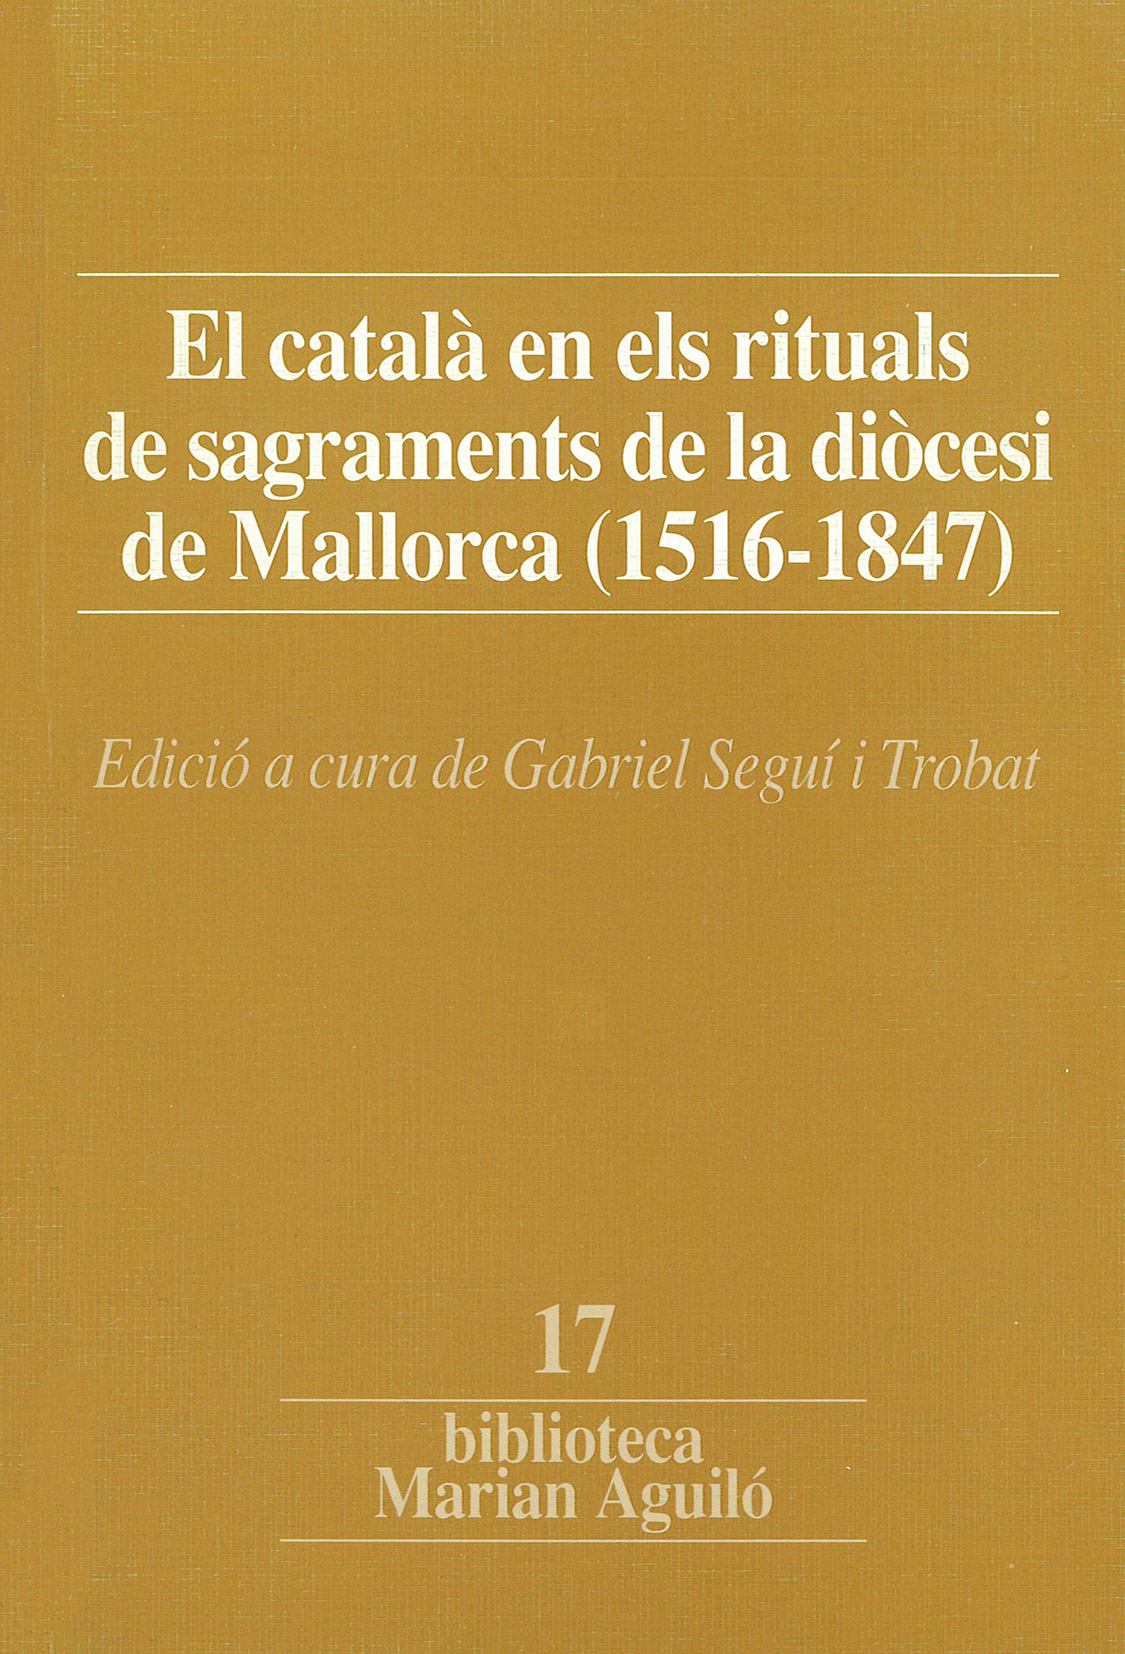 Gabriel Seguí i Trobat